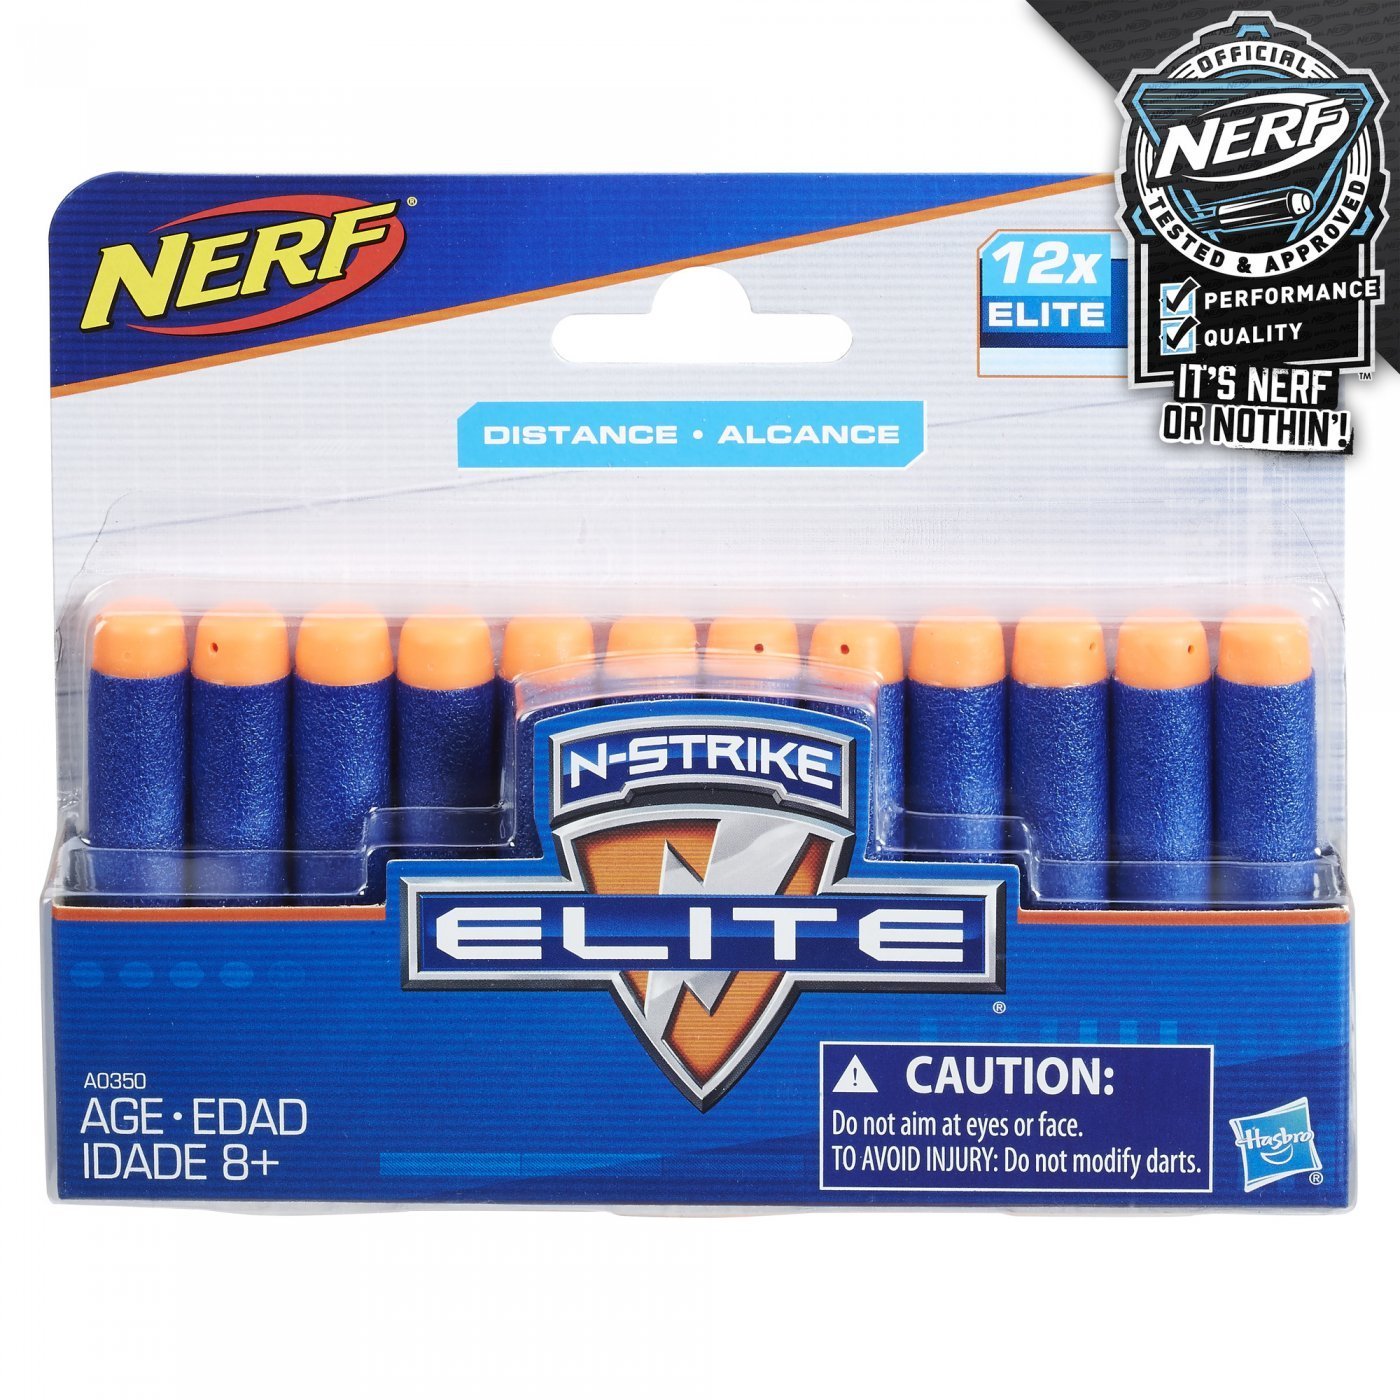 Repuesto Nerf N-Strike Elite x12